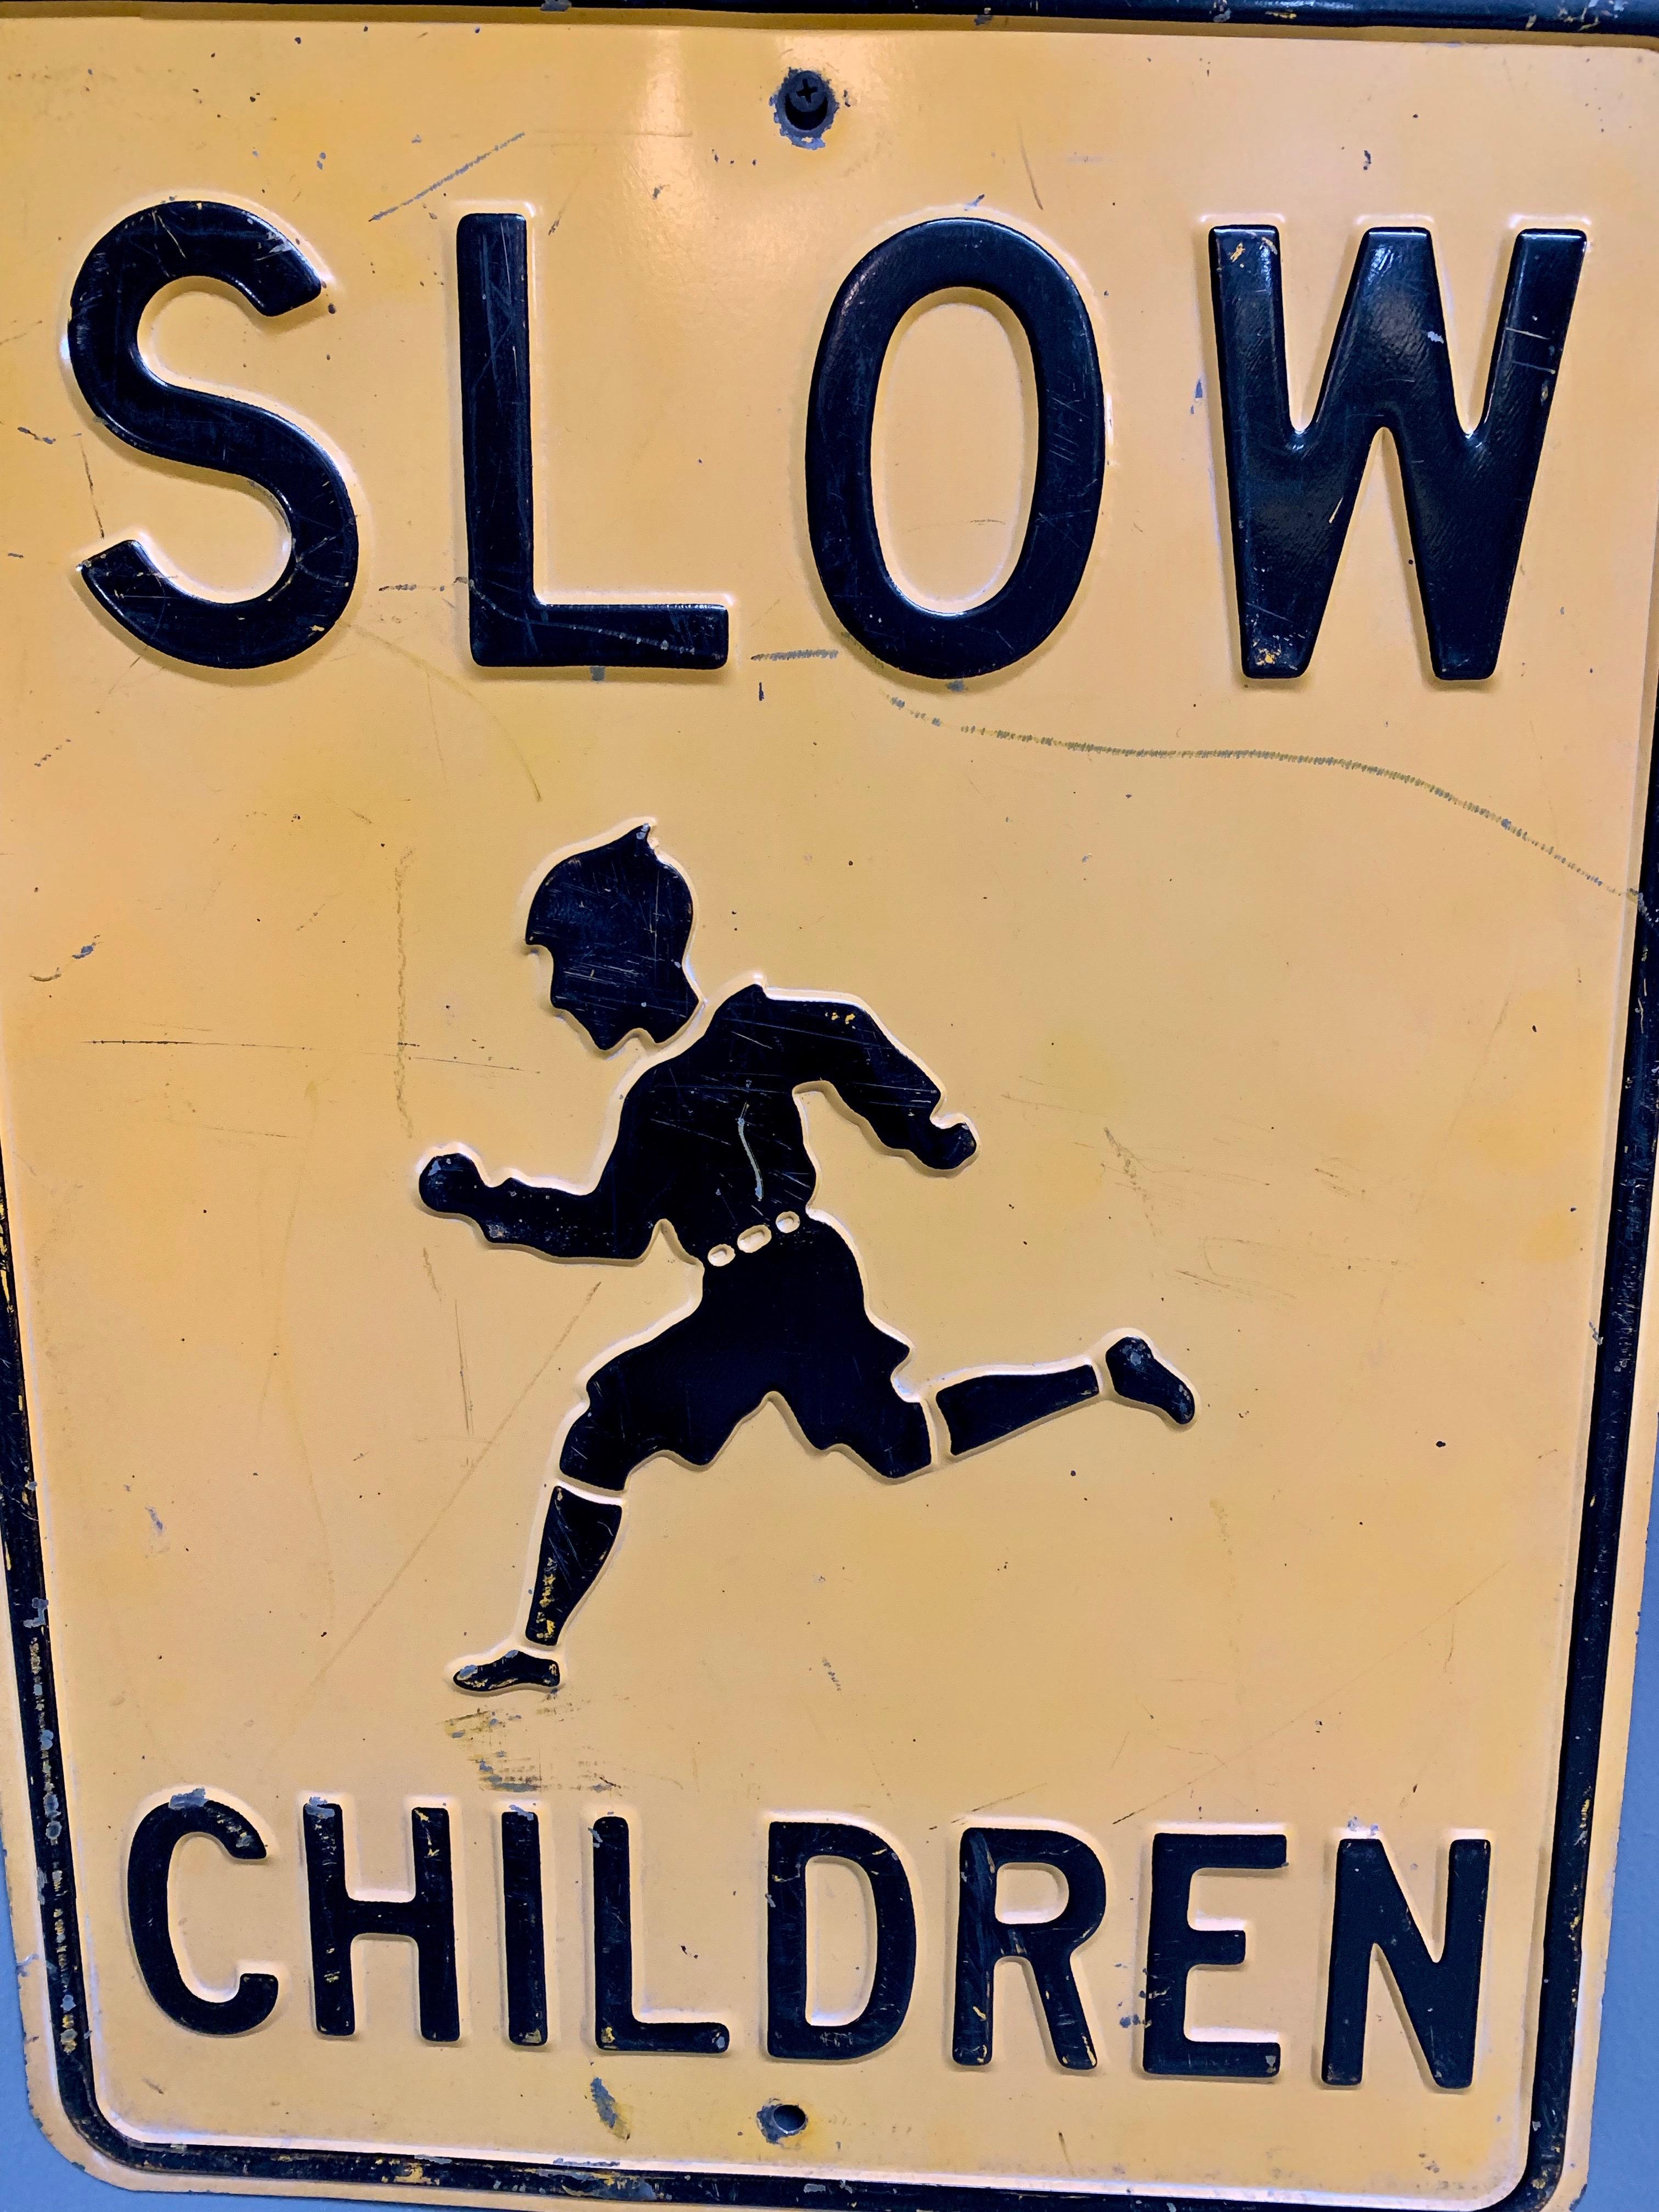 kids playing street sign